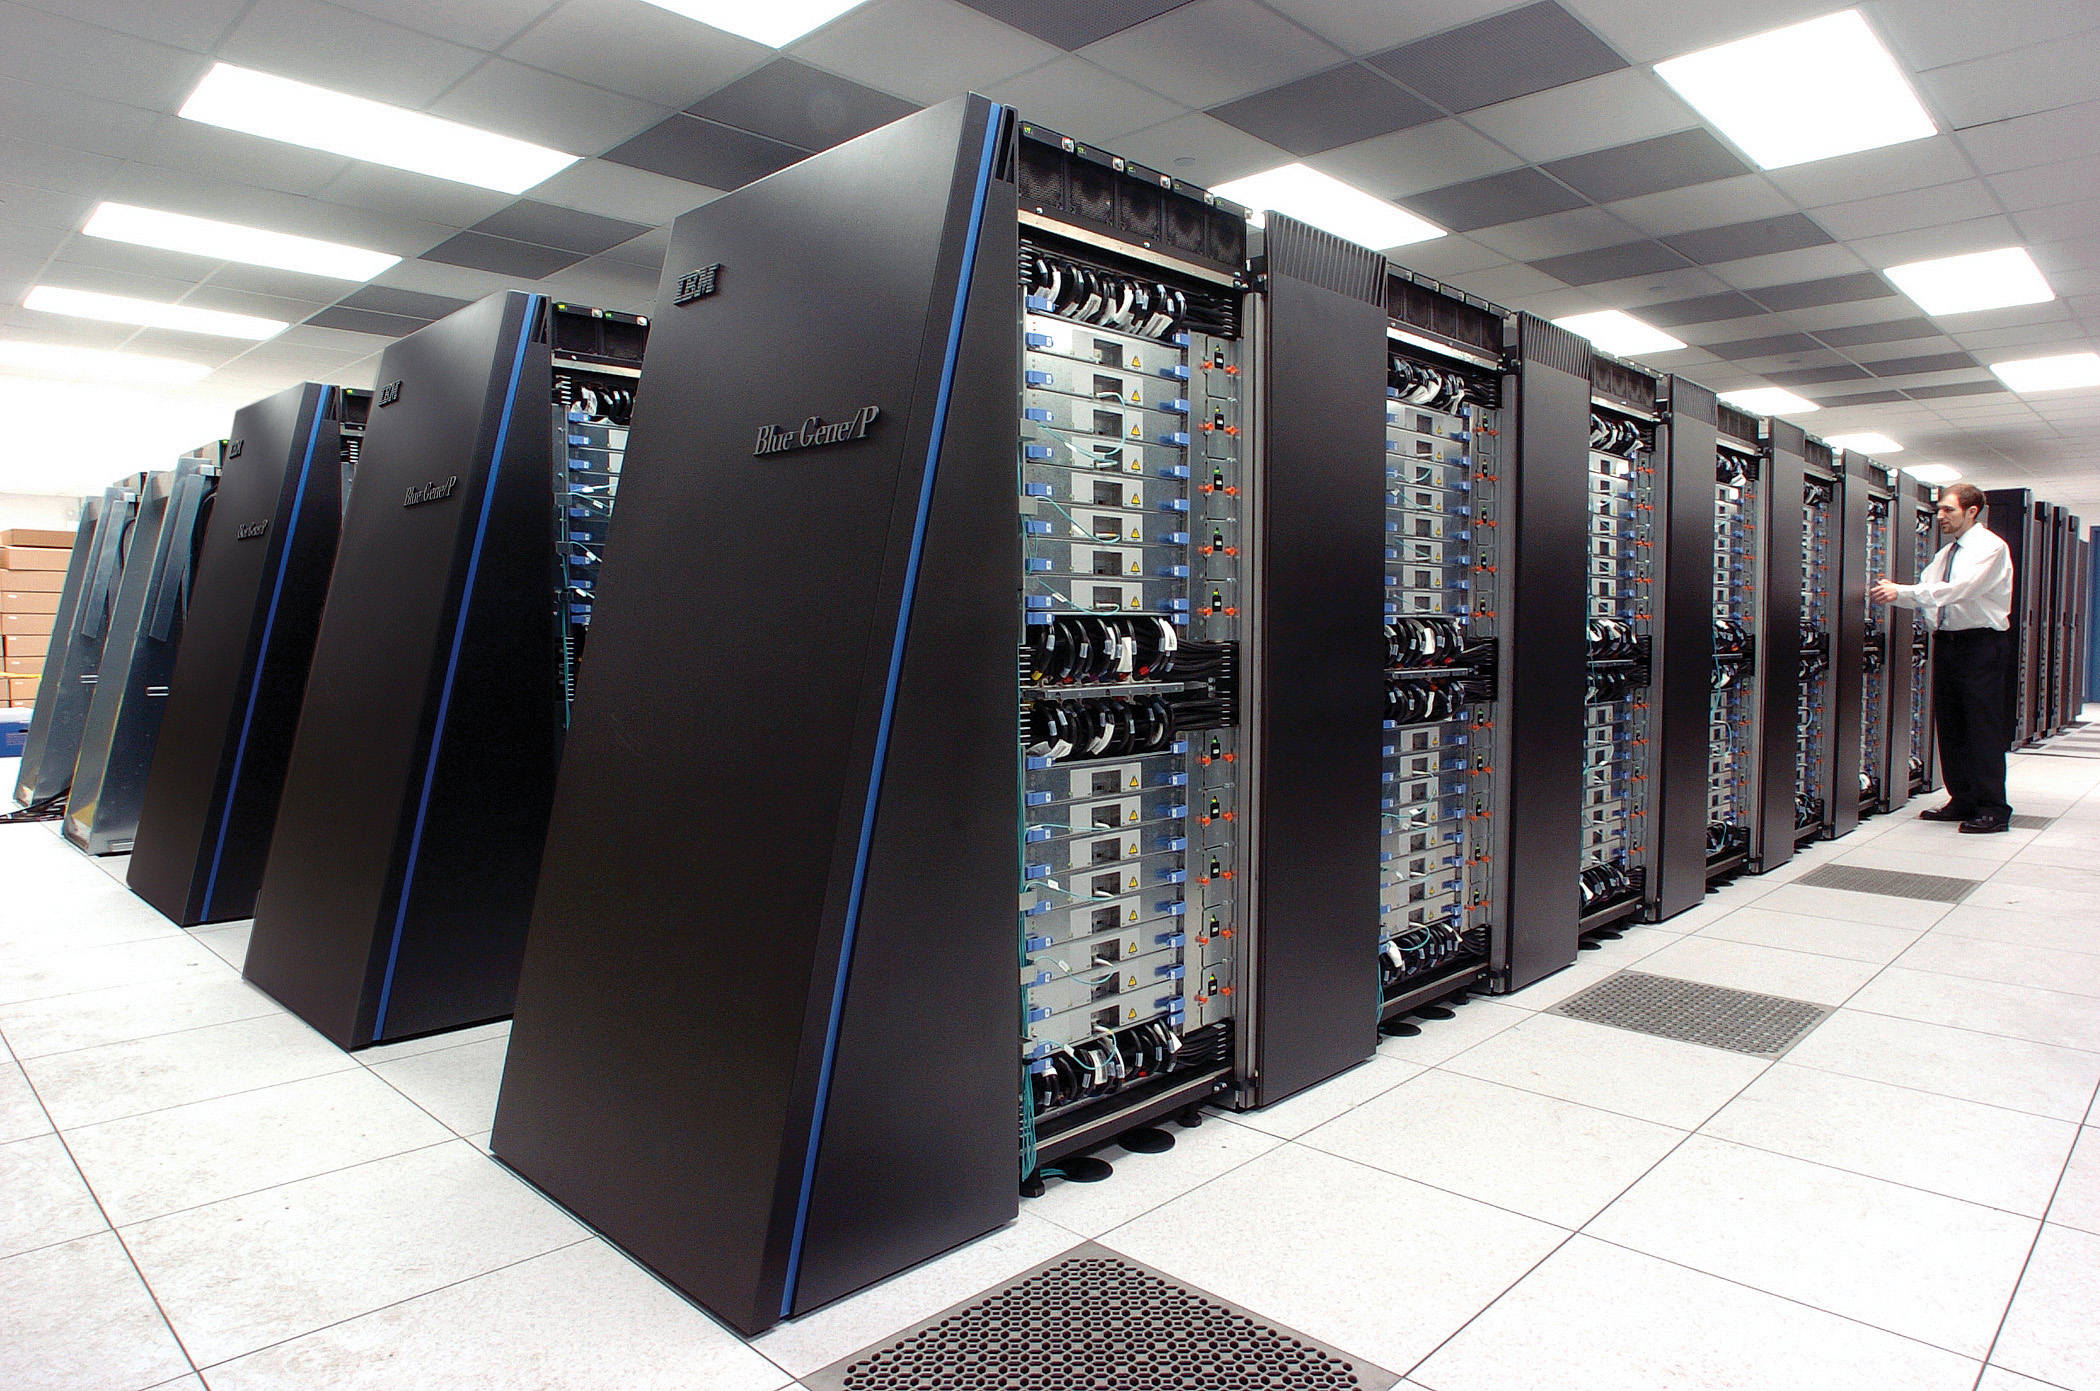 Une vue d'un des superordinateurs Blue Gene/P d'IBM. Gourmands en énergie, ils nécessitent d'être refroidis. On aurait tout intérêt à disposer de puces dissipant moins de chaleur et consommant moins d'énergie. © Wikipédia, CC by-sa 2.0